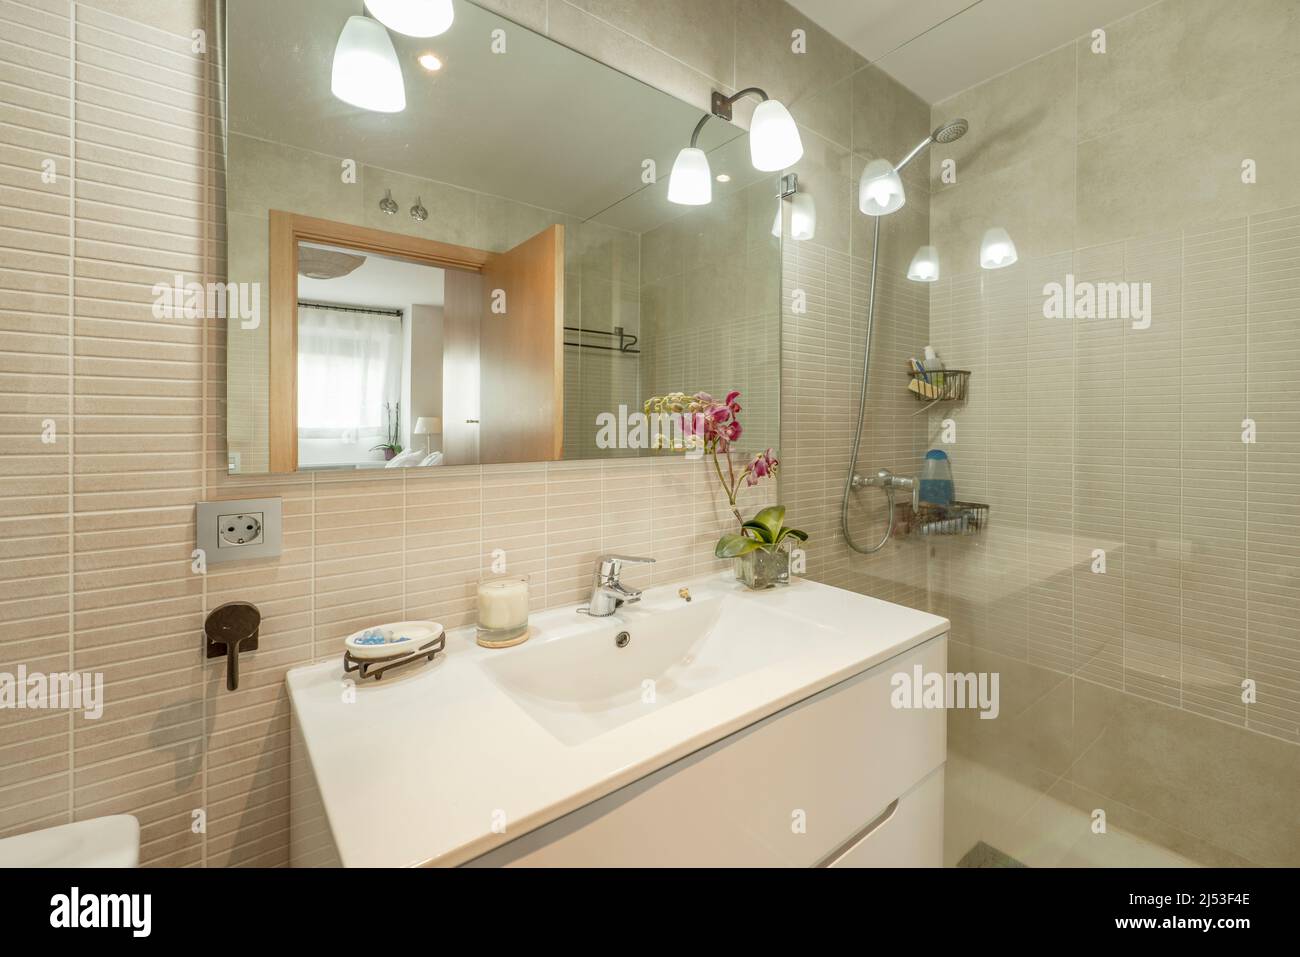 Badezimmer mit rahmenlosem Spiegel, Lampen mit Glasschirmen, Blumen in einer Ecke und Duschkabine mit Glasschirm Stockfoto